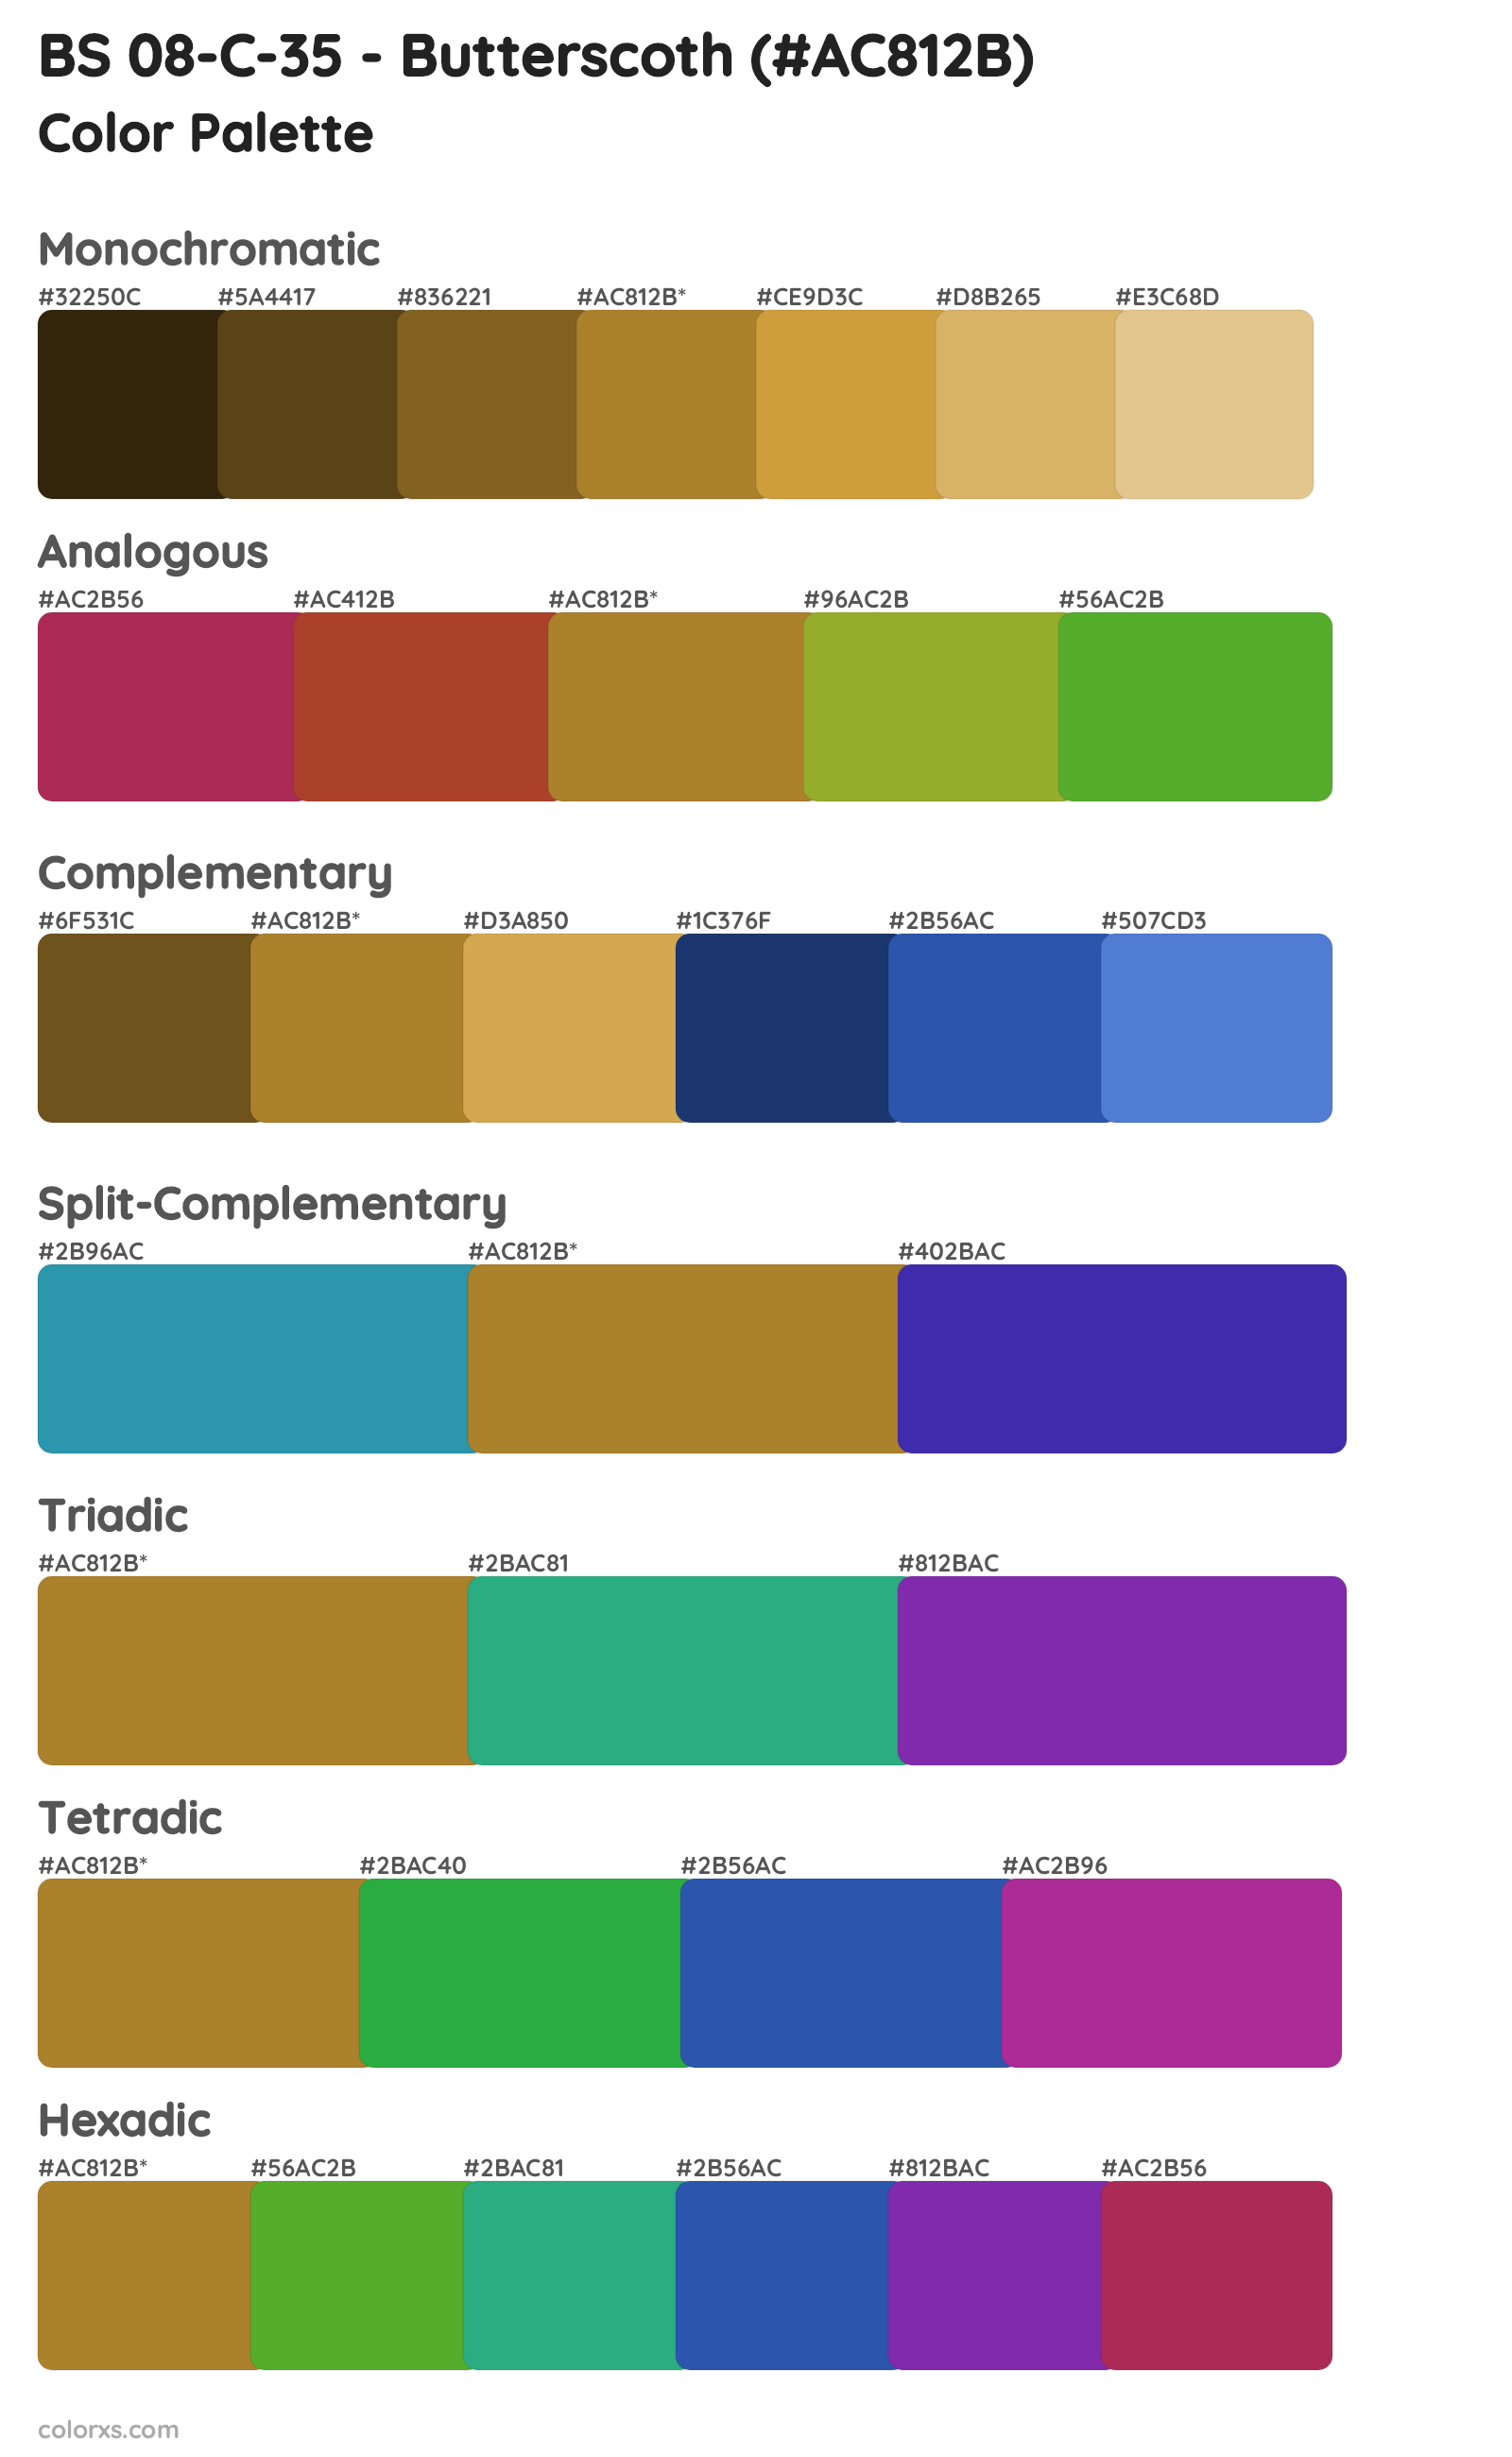 BS 08-C-35 - Butterscoth Color Scheme Palettes